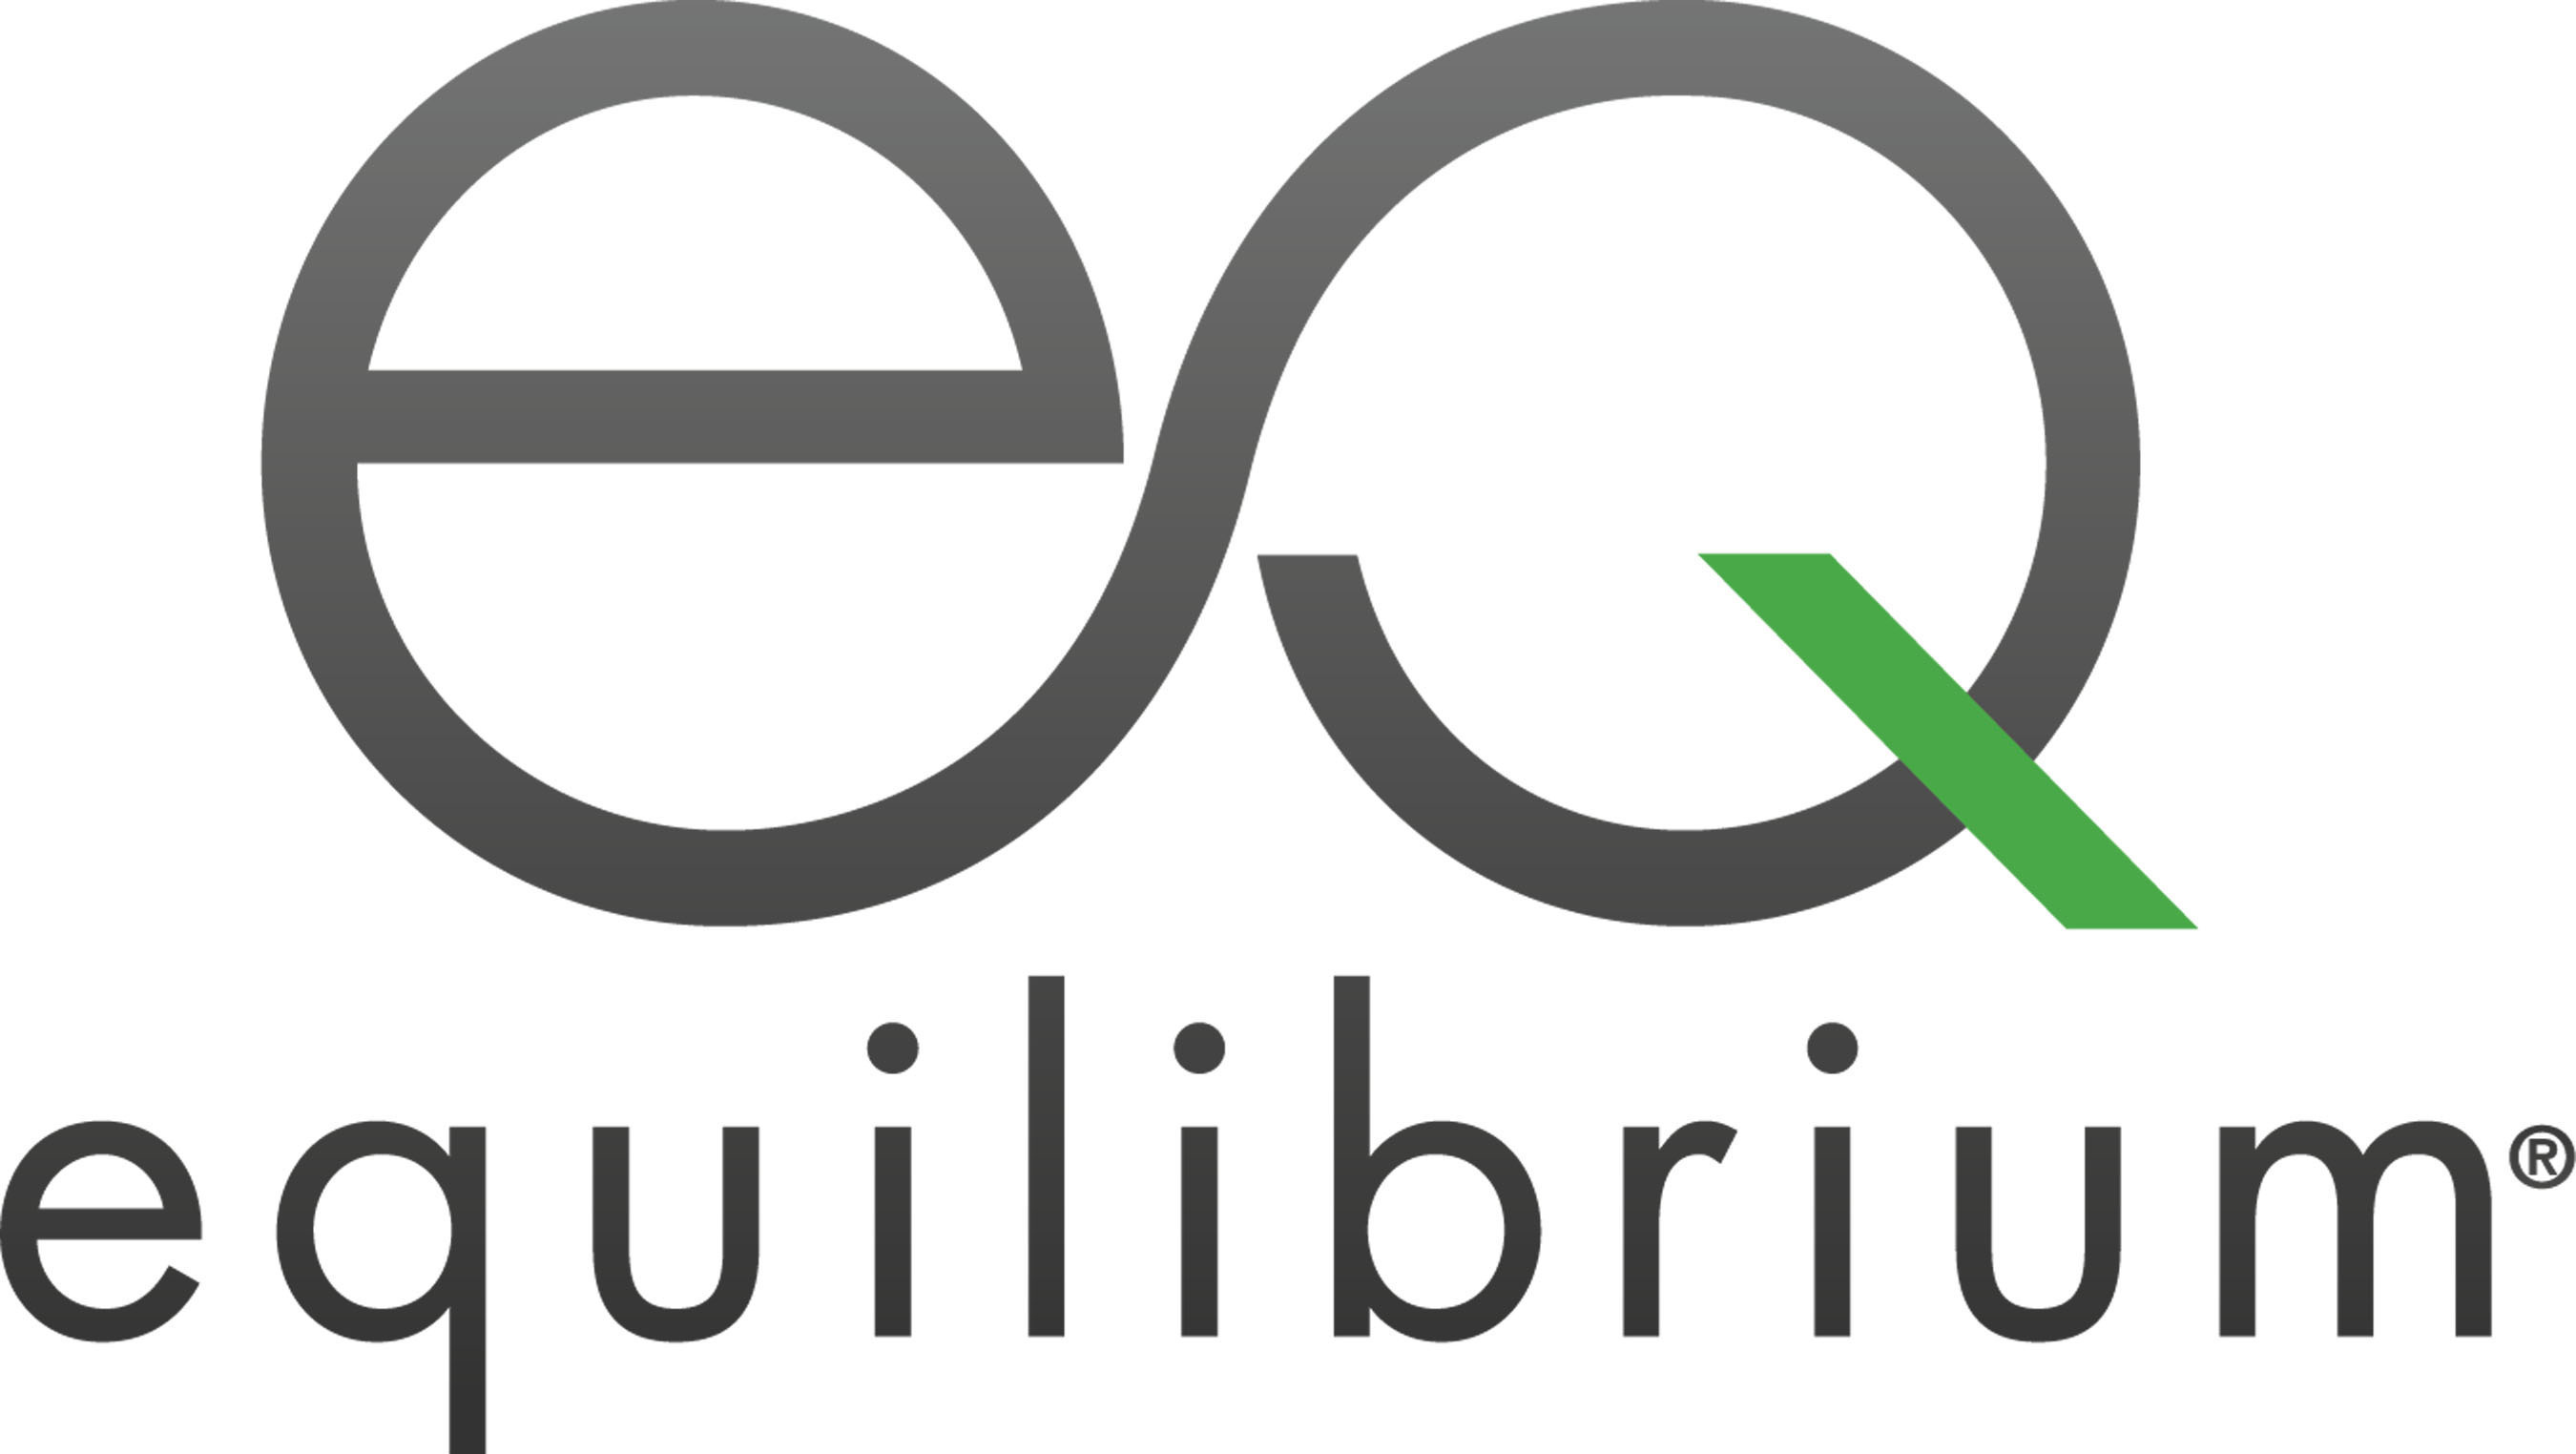 Equilibrium logo.